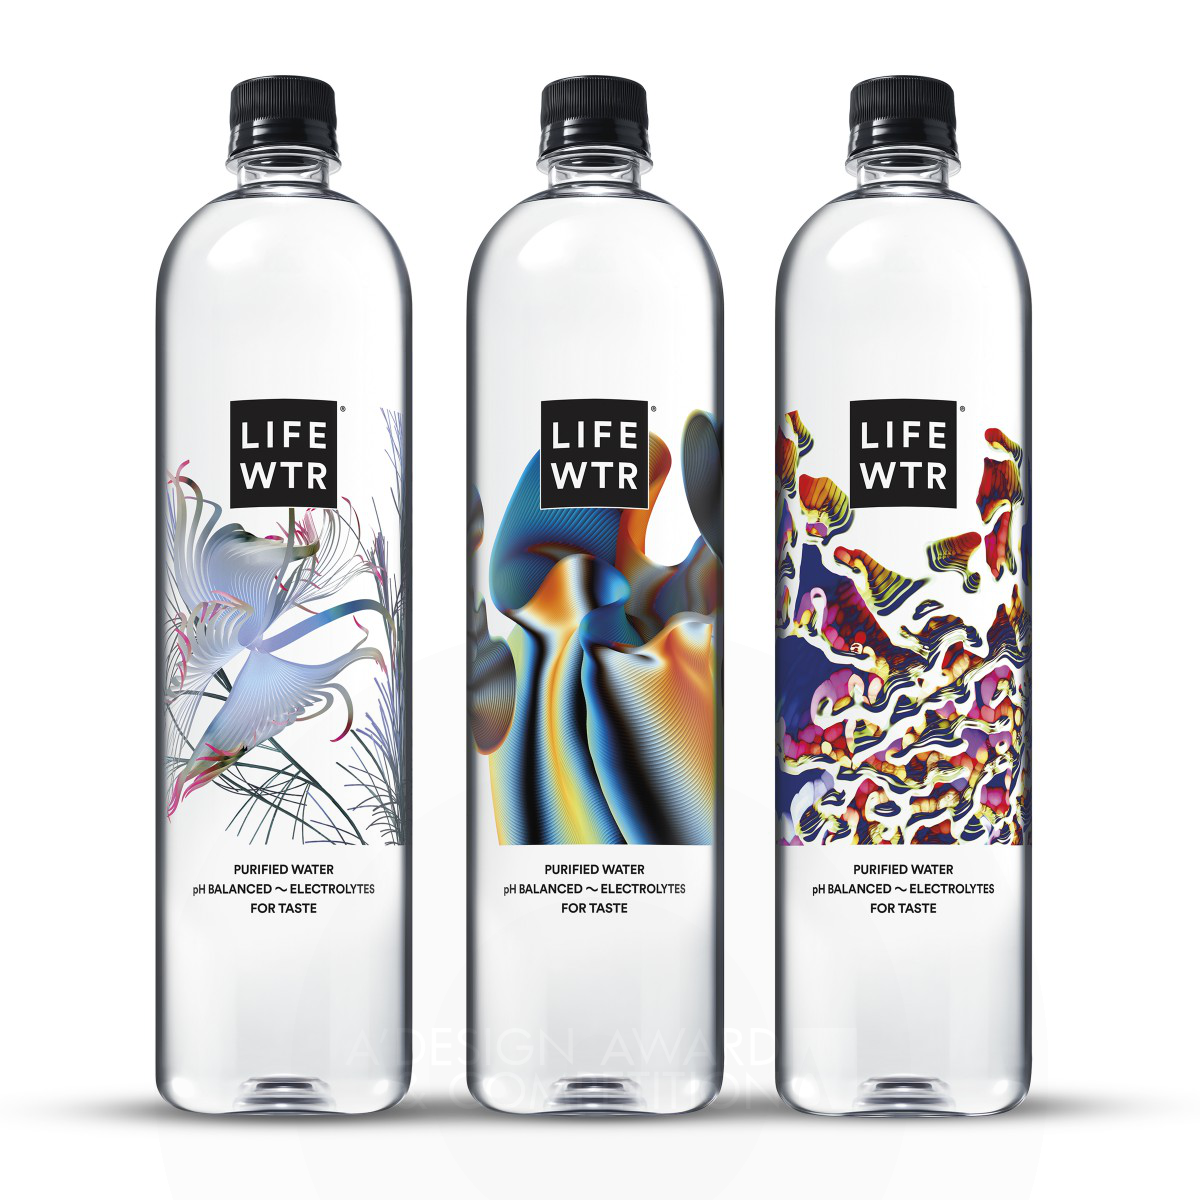 Lifewtr Series 7: Art through Technology Packaging